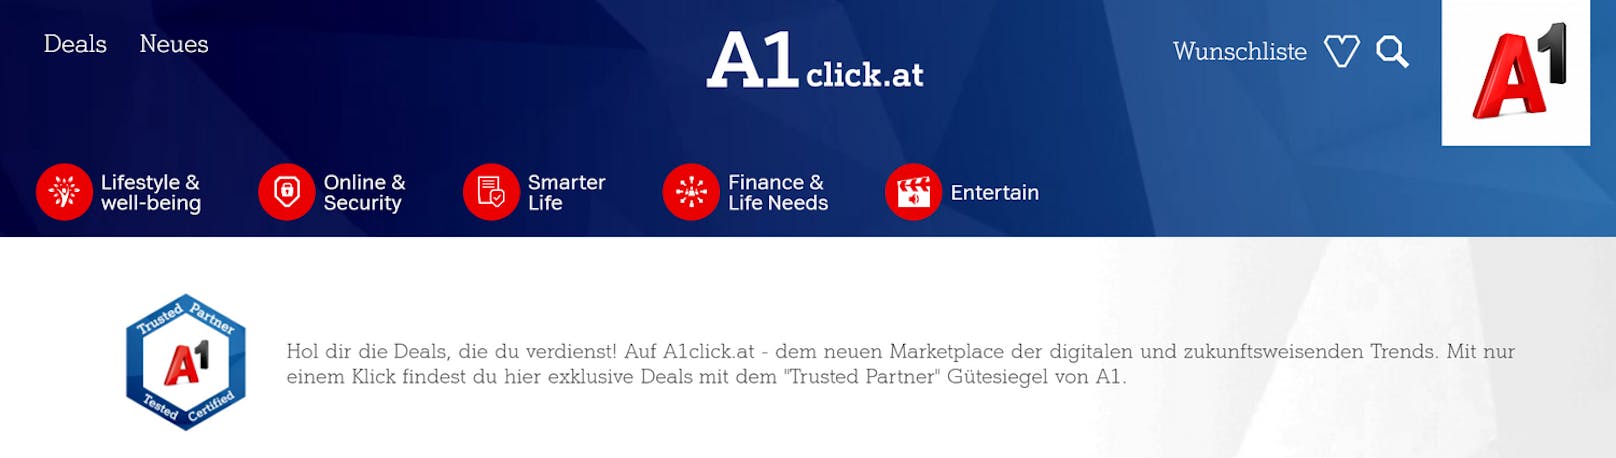 A1 bringt mit A1click.at einen Marketplace für digitale und zukunftsweisende Produkte.